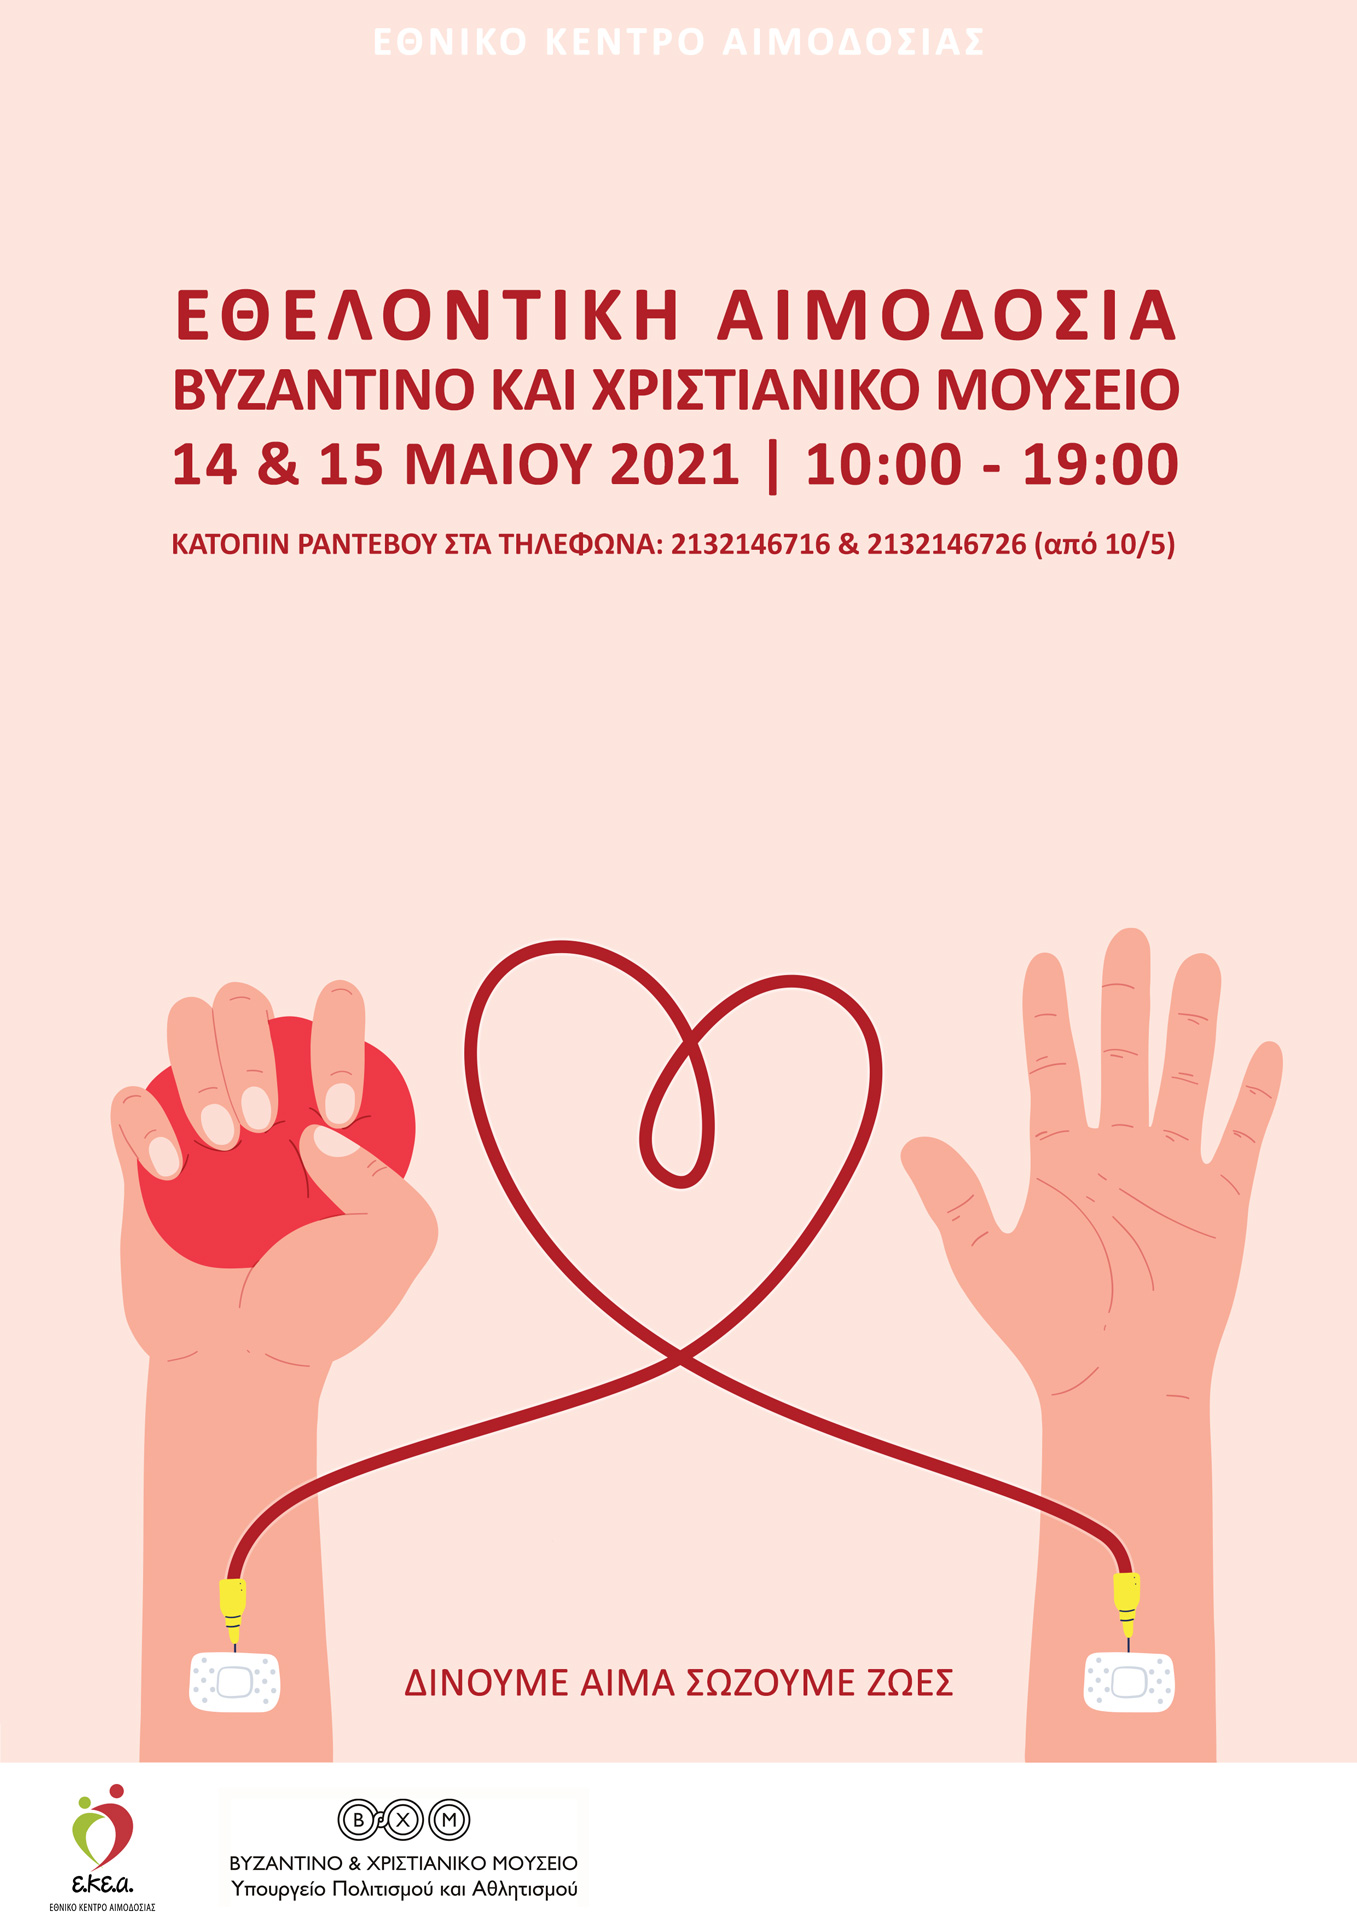 Διήμερη Εθελοντική Αιμοδοσία  στον προαύλιο χώρο του  Βυζαντινού και Χριστιανικού Μουσείου   Παρασκευή 14 και Σάββατο 15 Μαΐου 2021, 10:00-19:00